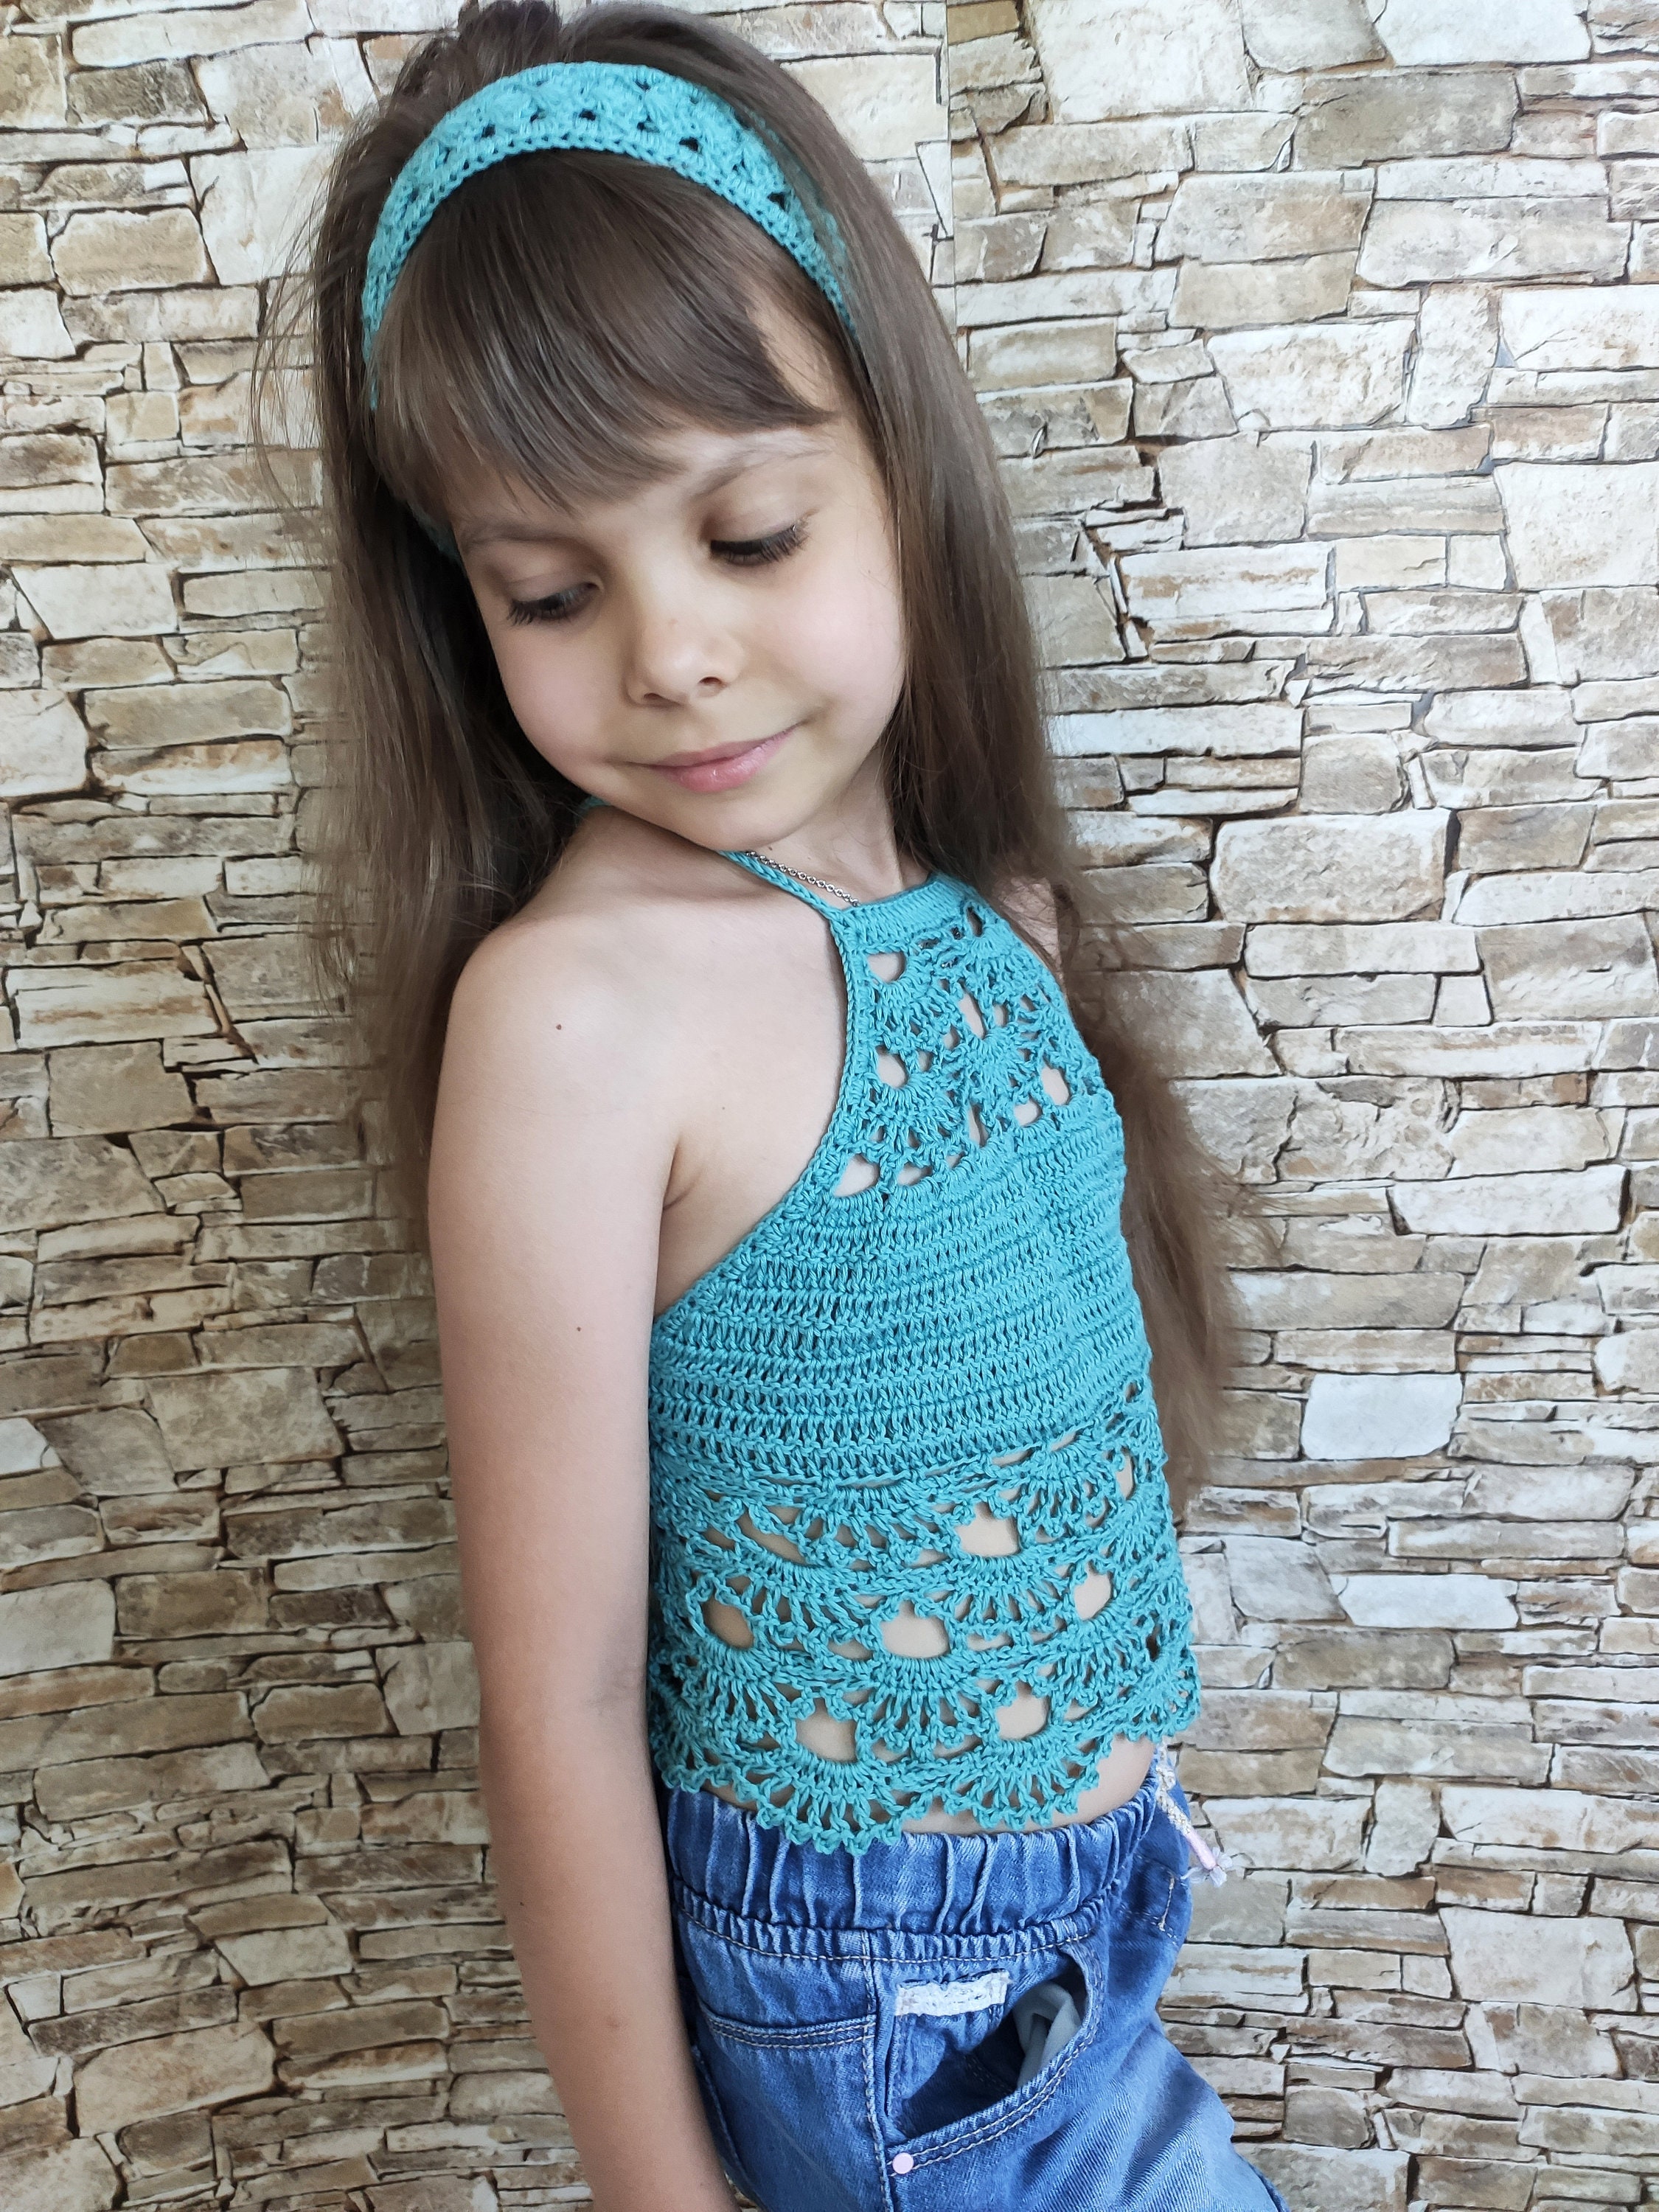 Turquoise Crochet Top for Little Girls / Women's Handmade - Etsy UK